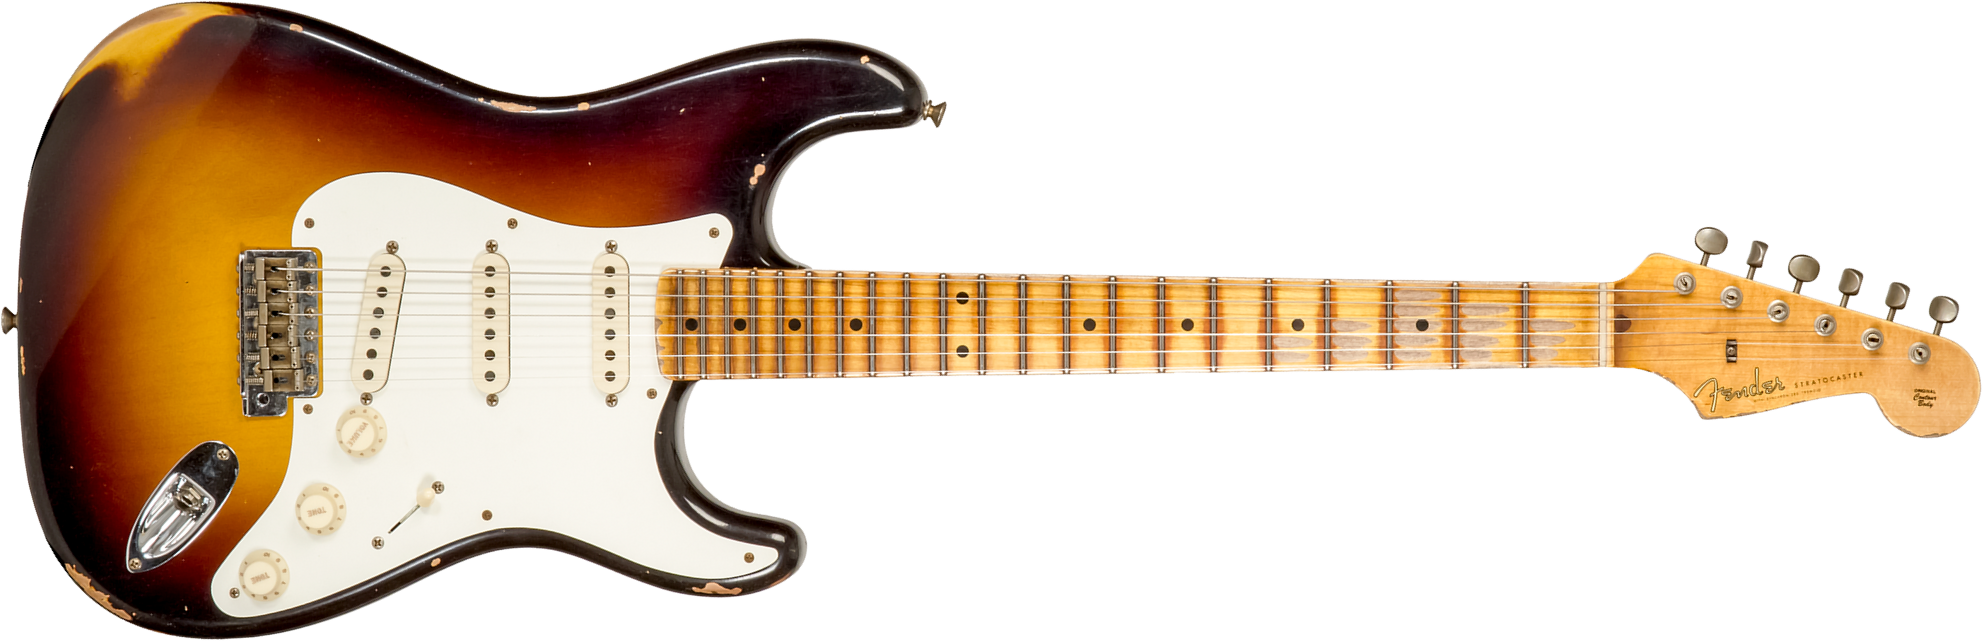 Fender Custom Shop Strat 1957 3s Trem Mn #cz575421 - Relic 2-color Sunburst - Guitare Électrique Forme Str - Main picture